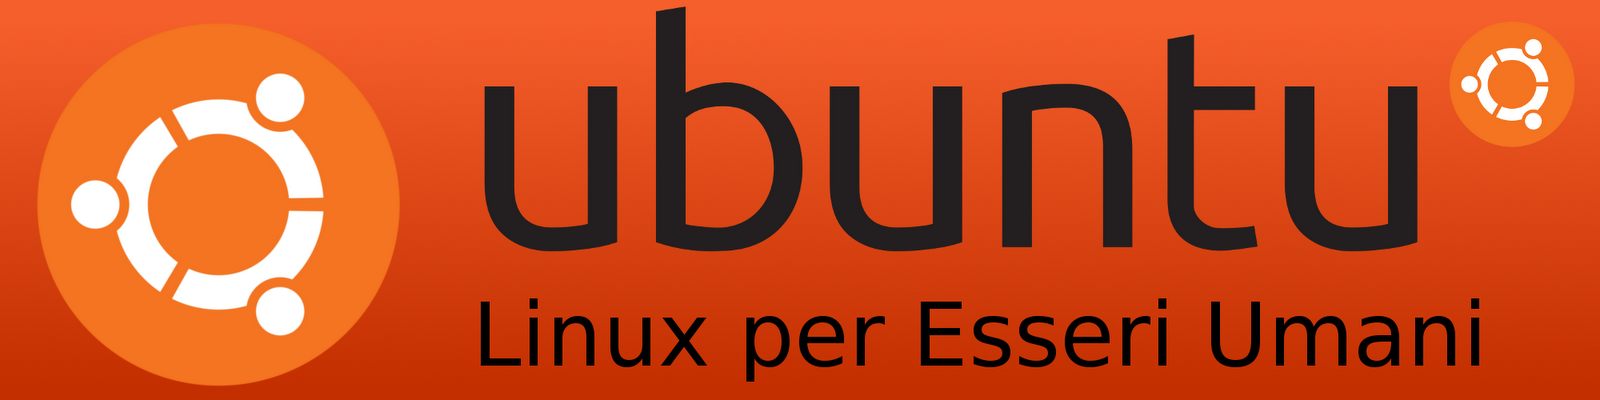 Ubuntu Blog: Diffondi Ubuntu